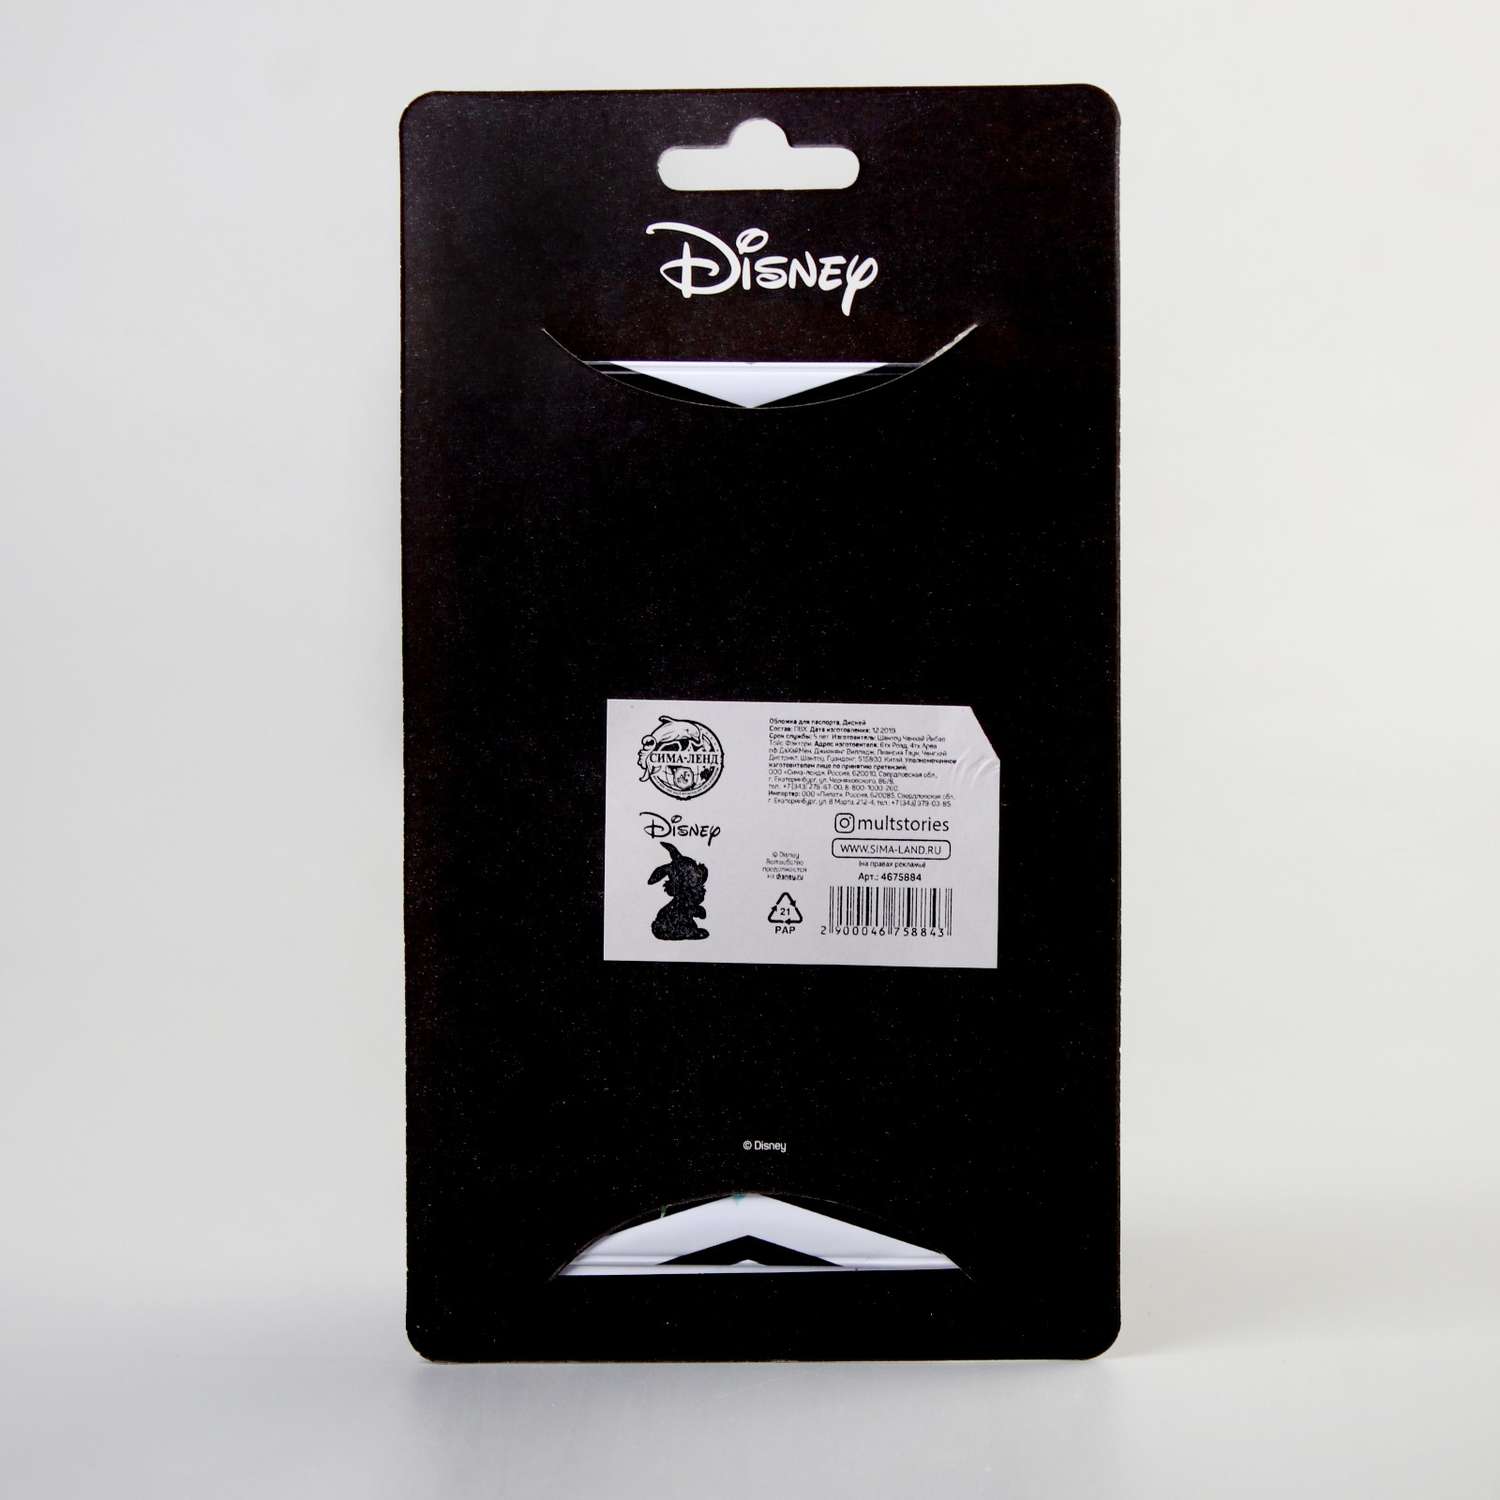 Обложка Disney для паспорта Disney - фото 5